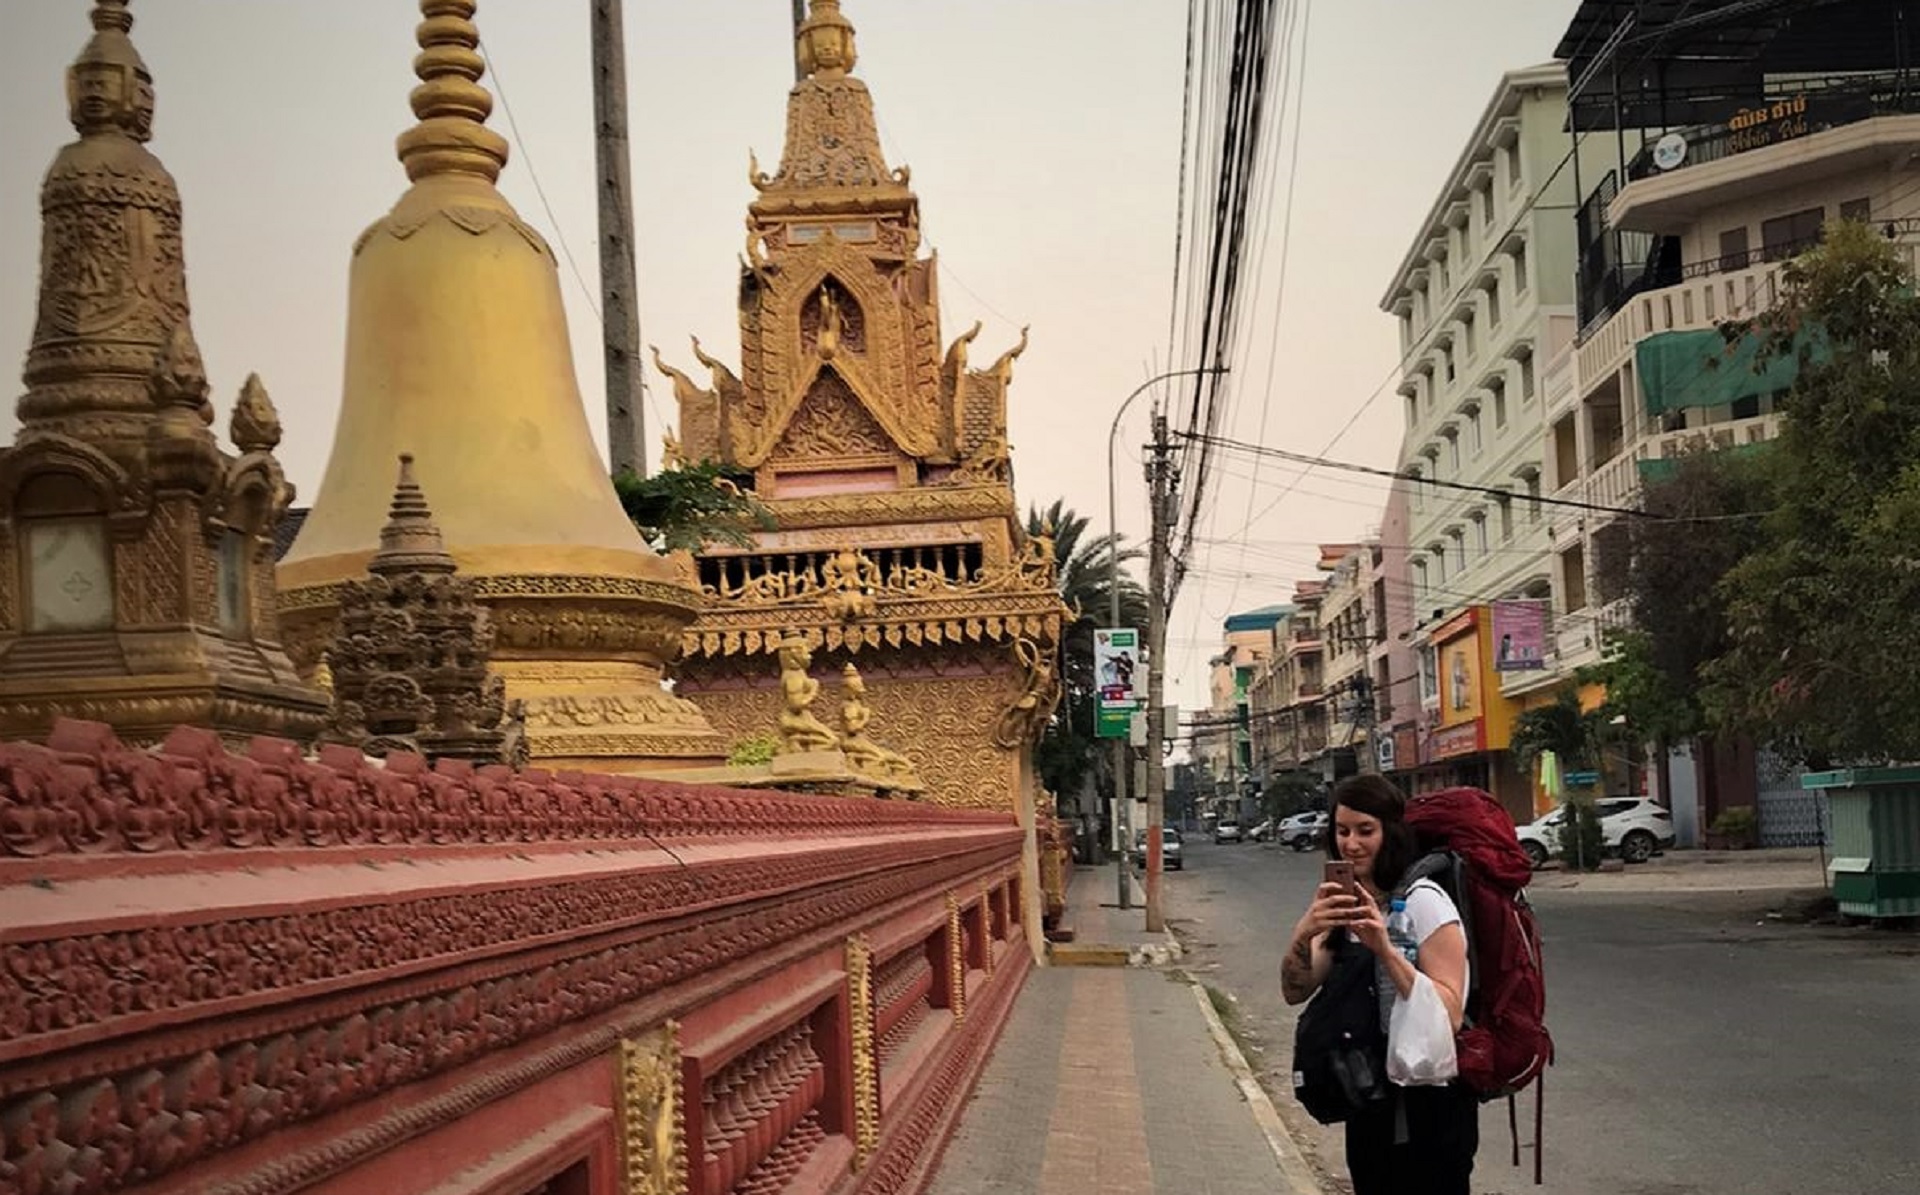 Frau mit Rucksack vor buddhistischem Kloster in Battambang am frühen Morgen